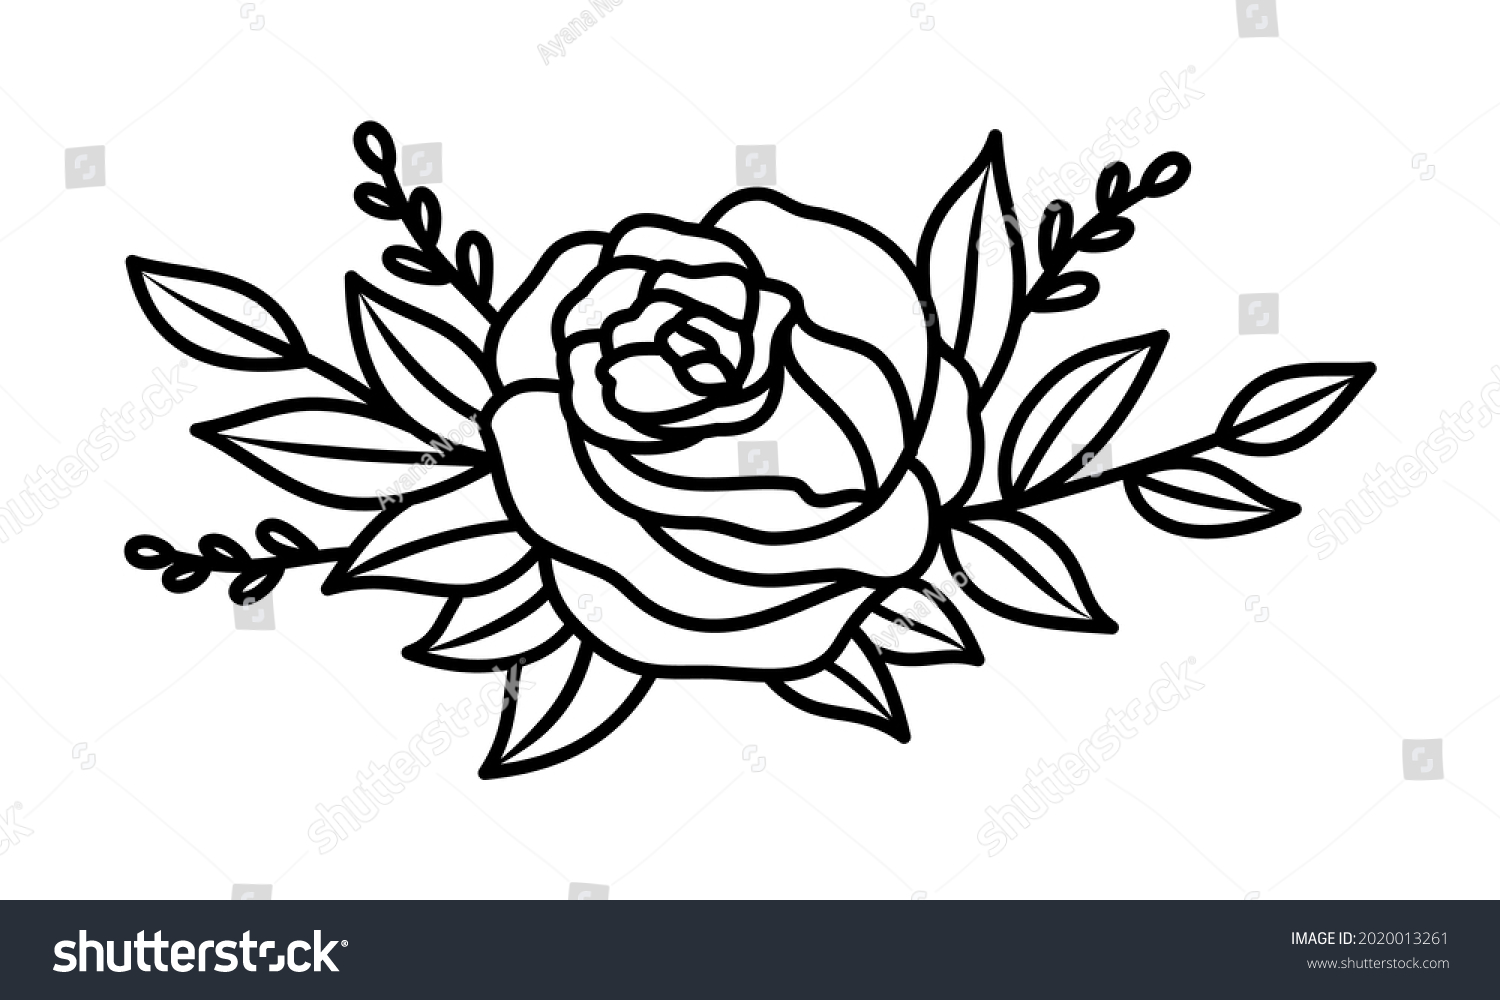 SVG of Rose bouquet line design element. Black and white vector illustration svg